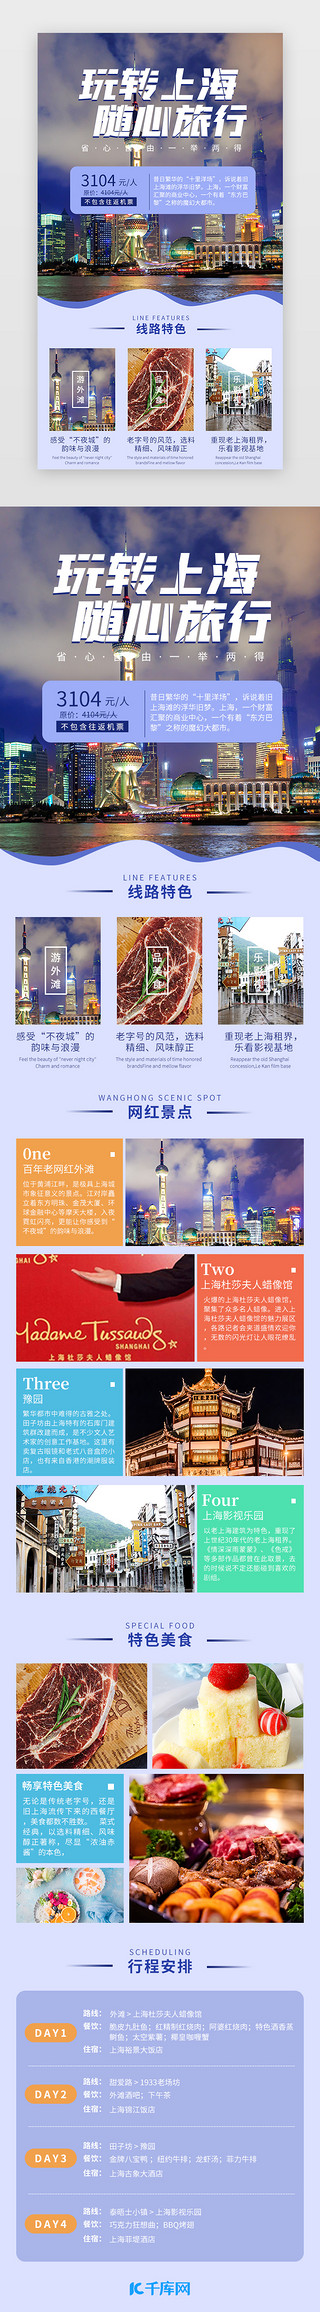 景点UI设计素材_玩转上海 随心旅行 蓝色简约景点介绍H5